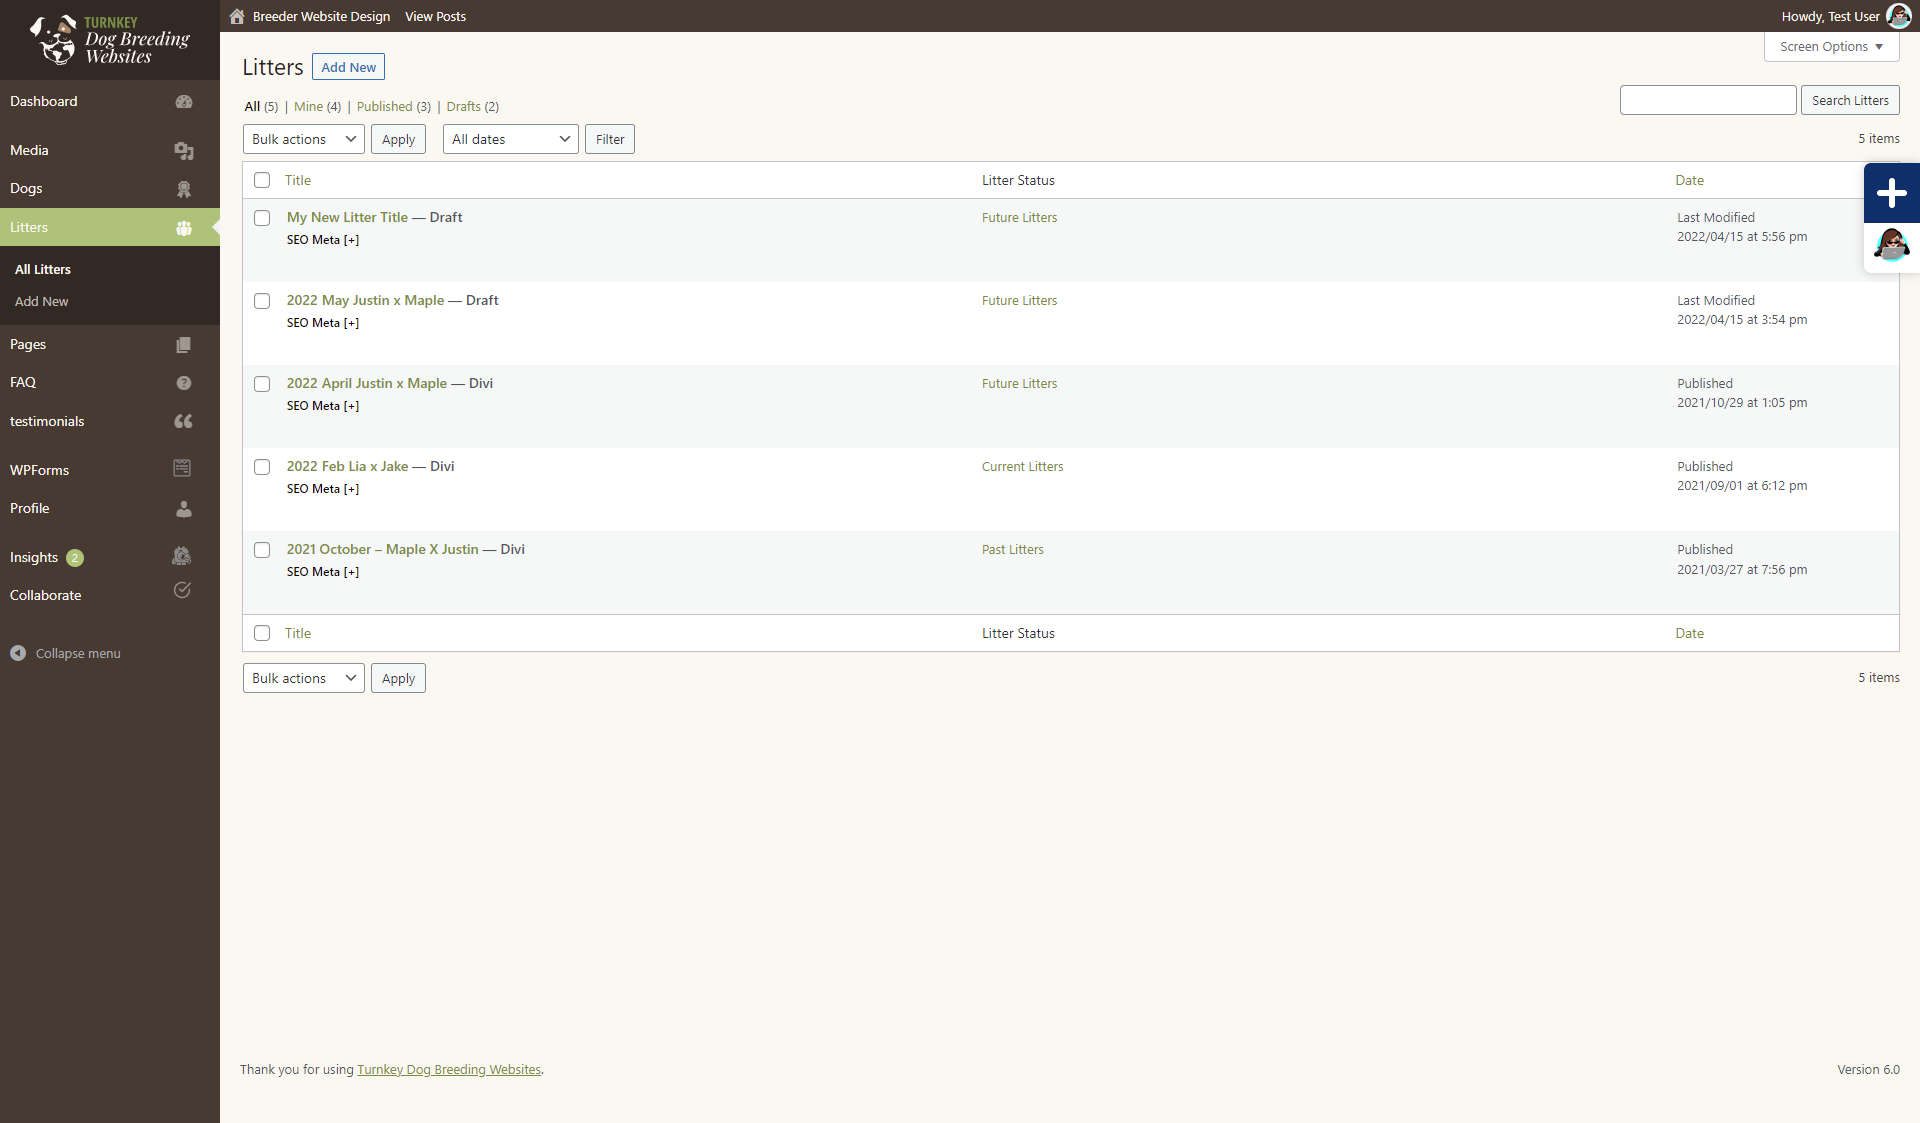 Turnkey Dog Breeding Websites Litters dashboard screenshot